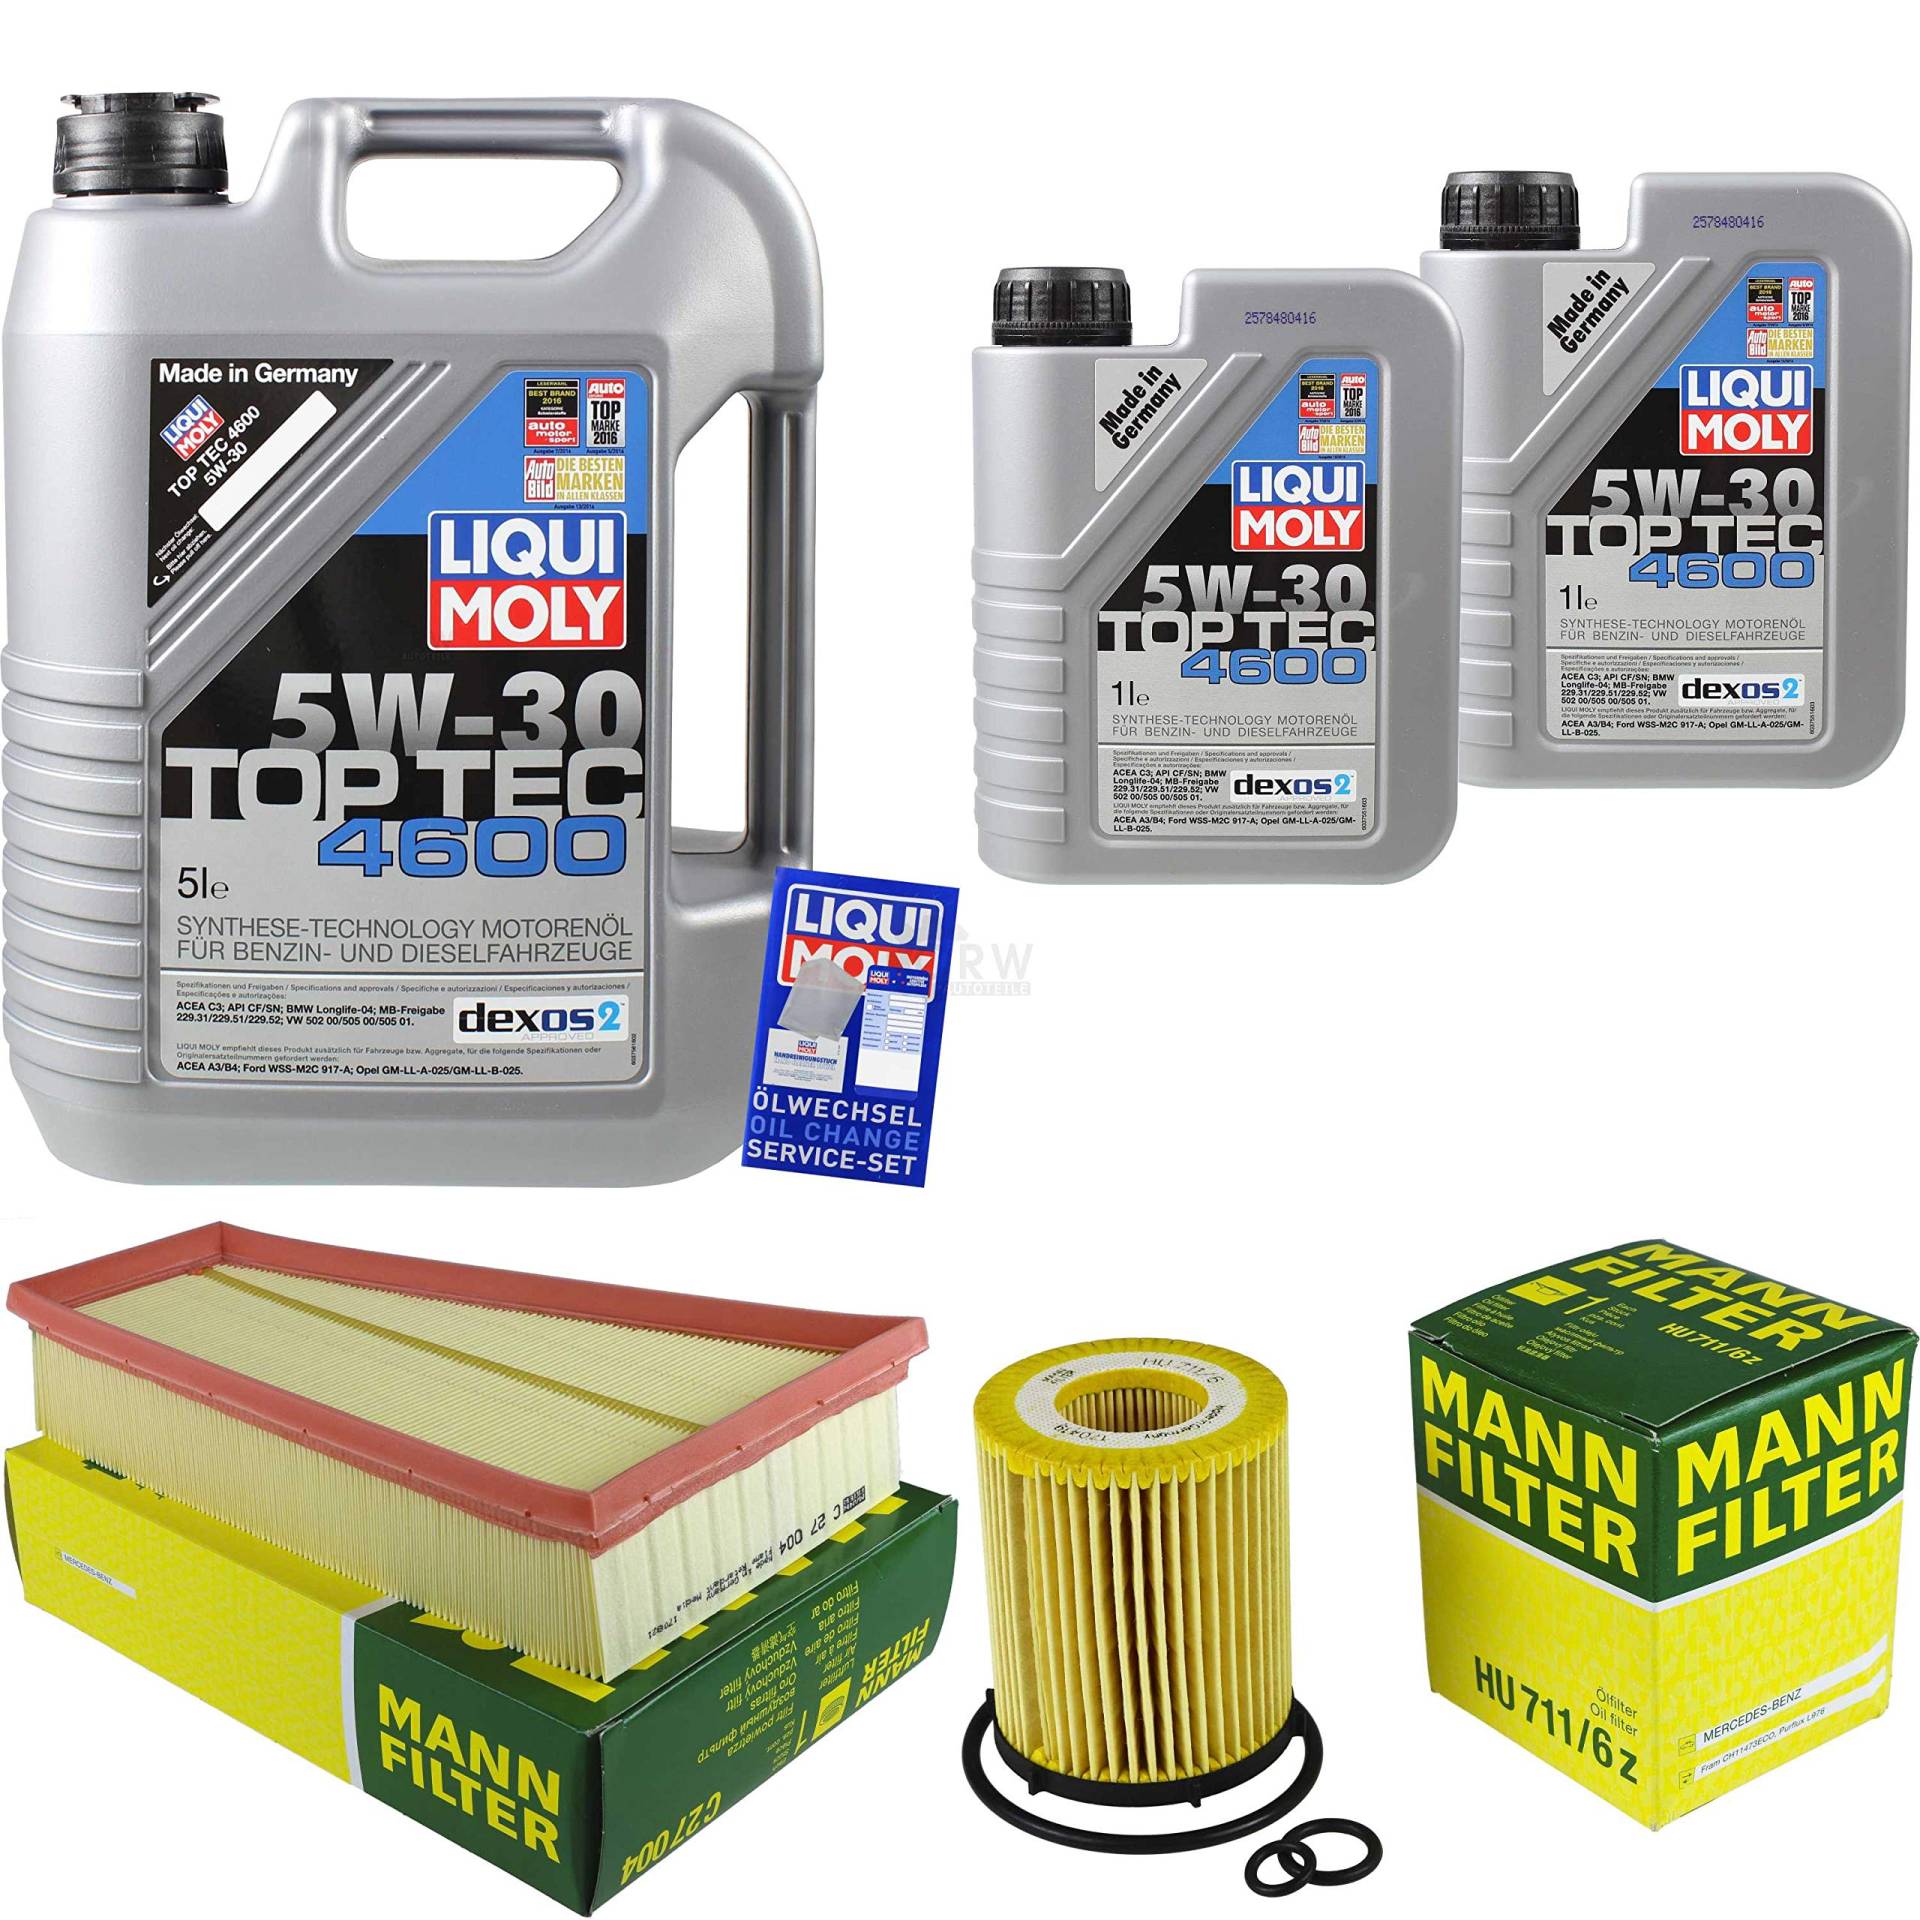 Filter Set Inspektionspaket 7 Liter Motoröl Top Tec 4600 5W-30 MANN-FILTER Luftfilter Ölfilter von Diederichs